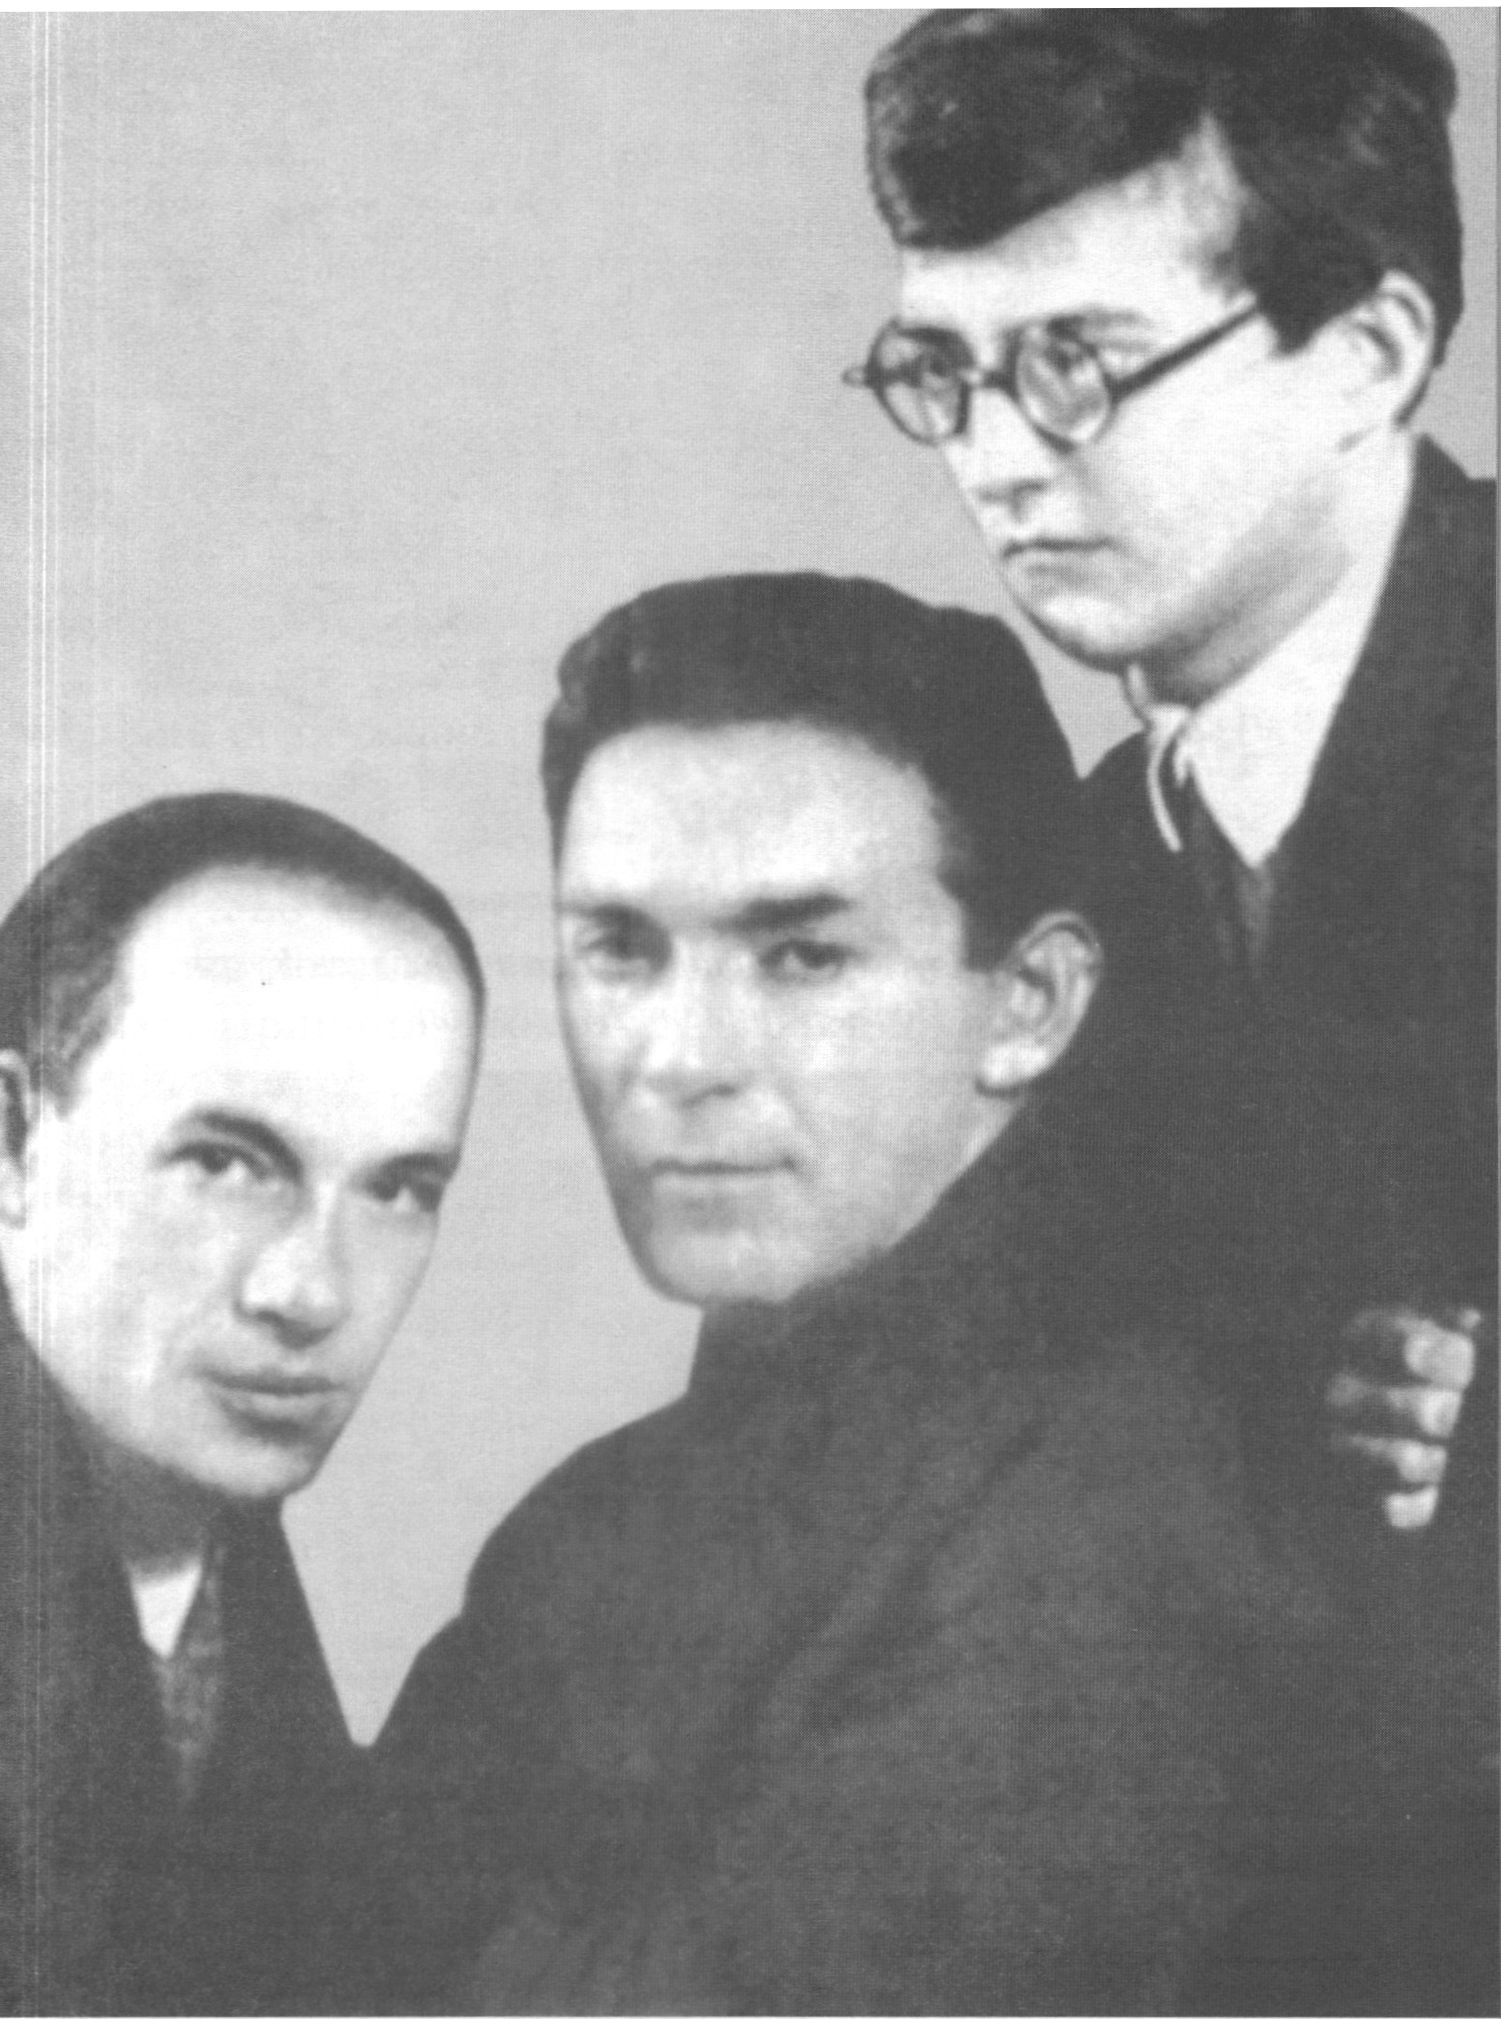 Дунаевский, Утёсов и Шостакович вовсе не случайно вместе. Самый молодой из них — Дмитрий Шостакович написал музыку к фильму «Встречный». Он наставник тех, кто приступает к работе над «Весёлыми ребятами»